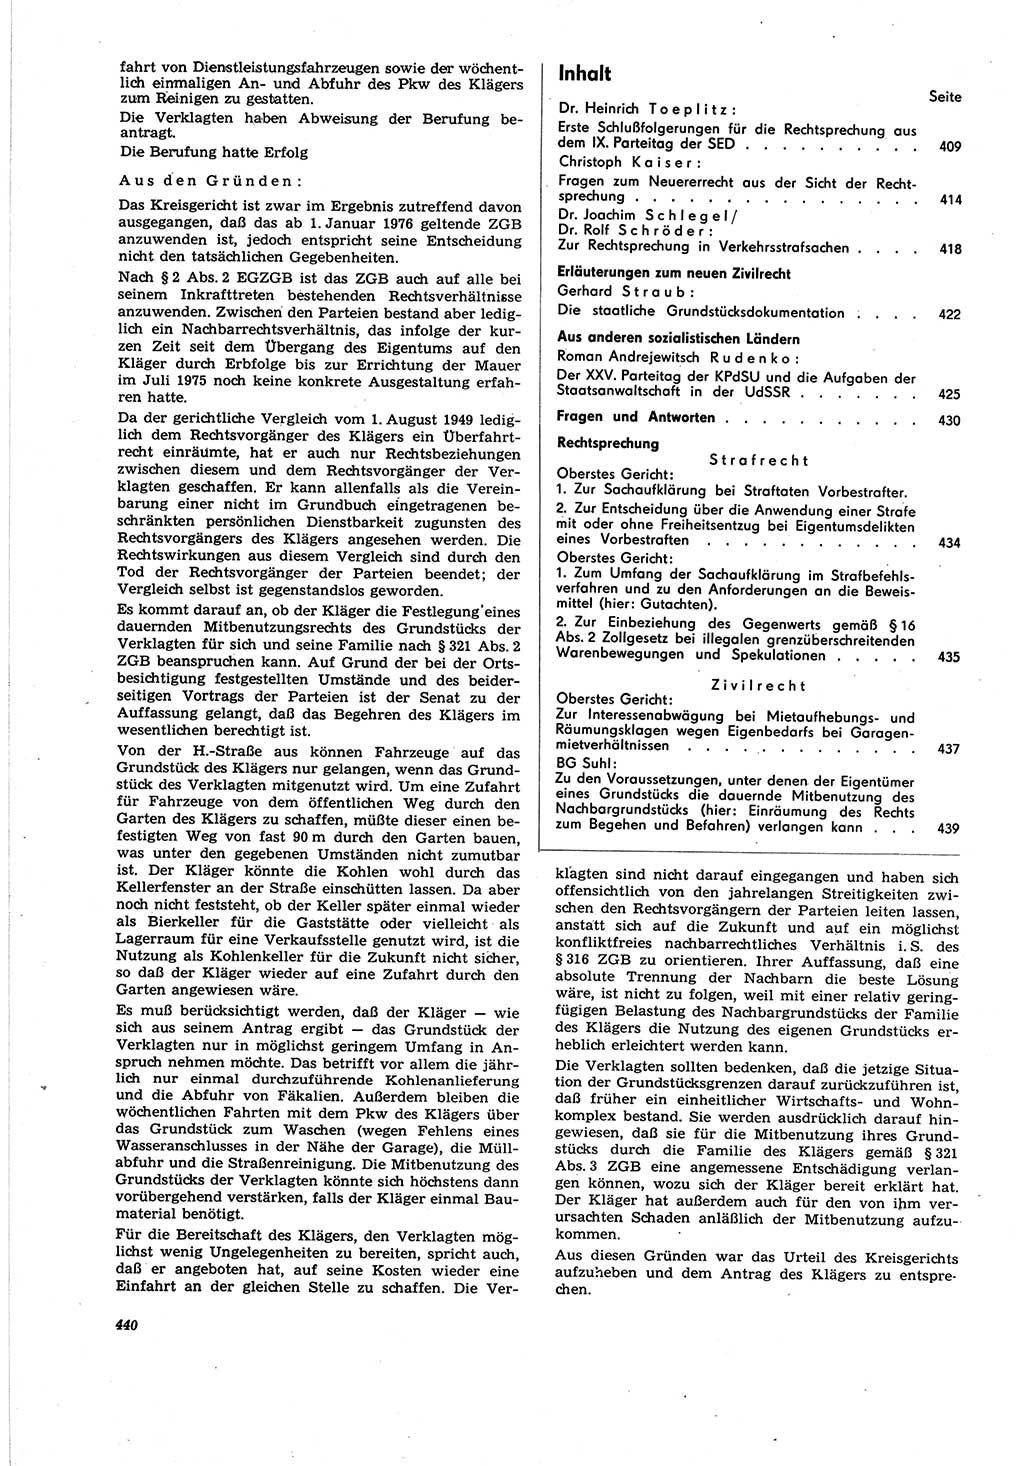 Neue Justiz (NJ), Zeitschrift für Recht und Rechtswissenschaft [Deutsche Demokratische Republik (DDR)], 30. Jahrgang 1976, Seite 440 (NJ DDR 1976, S. 440)